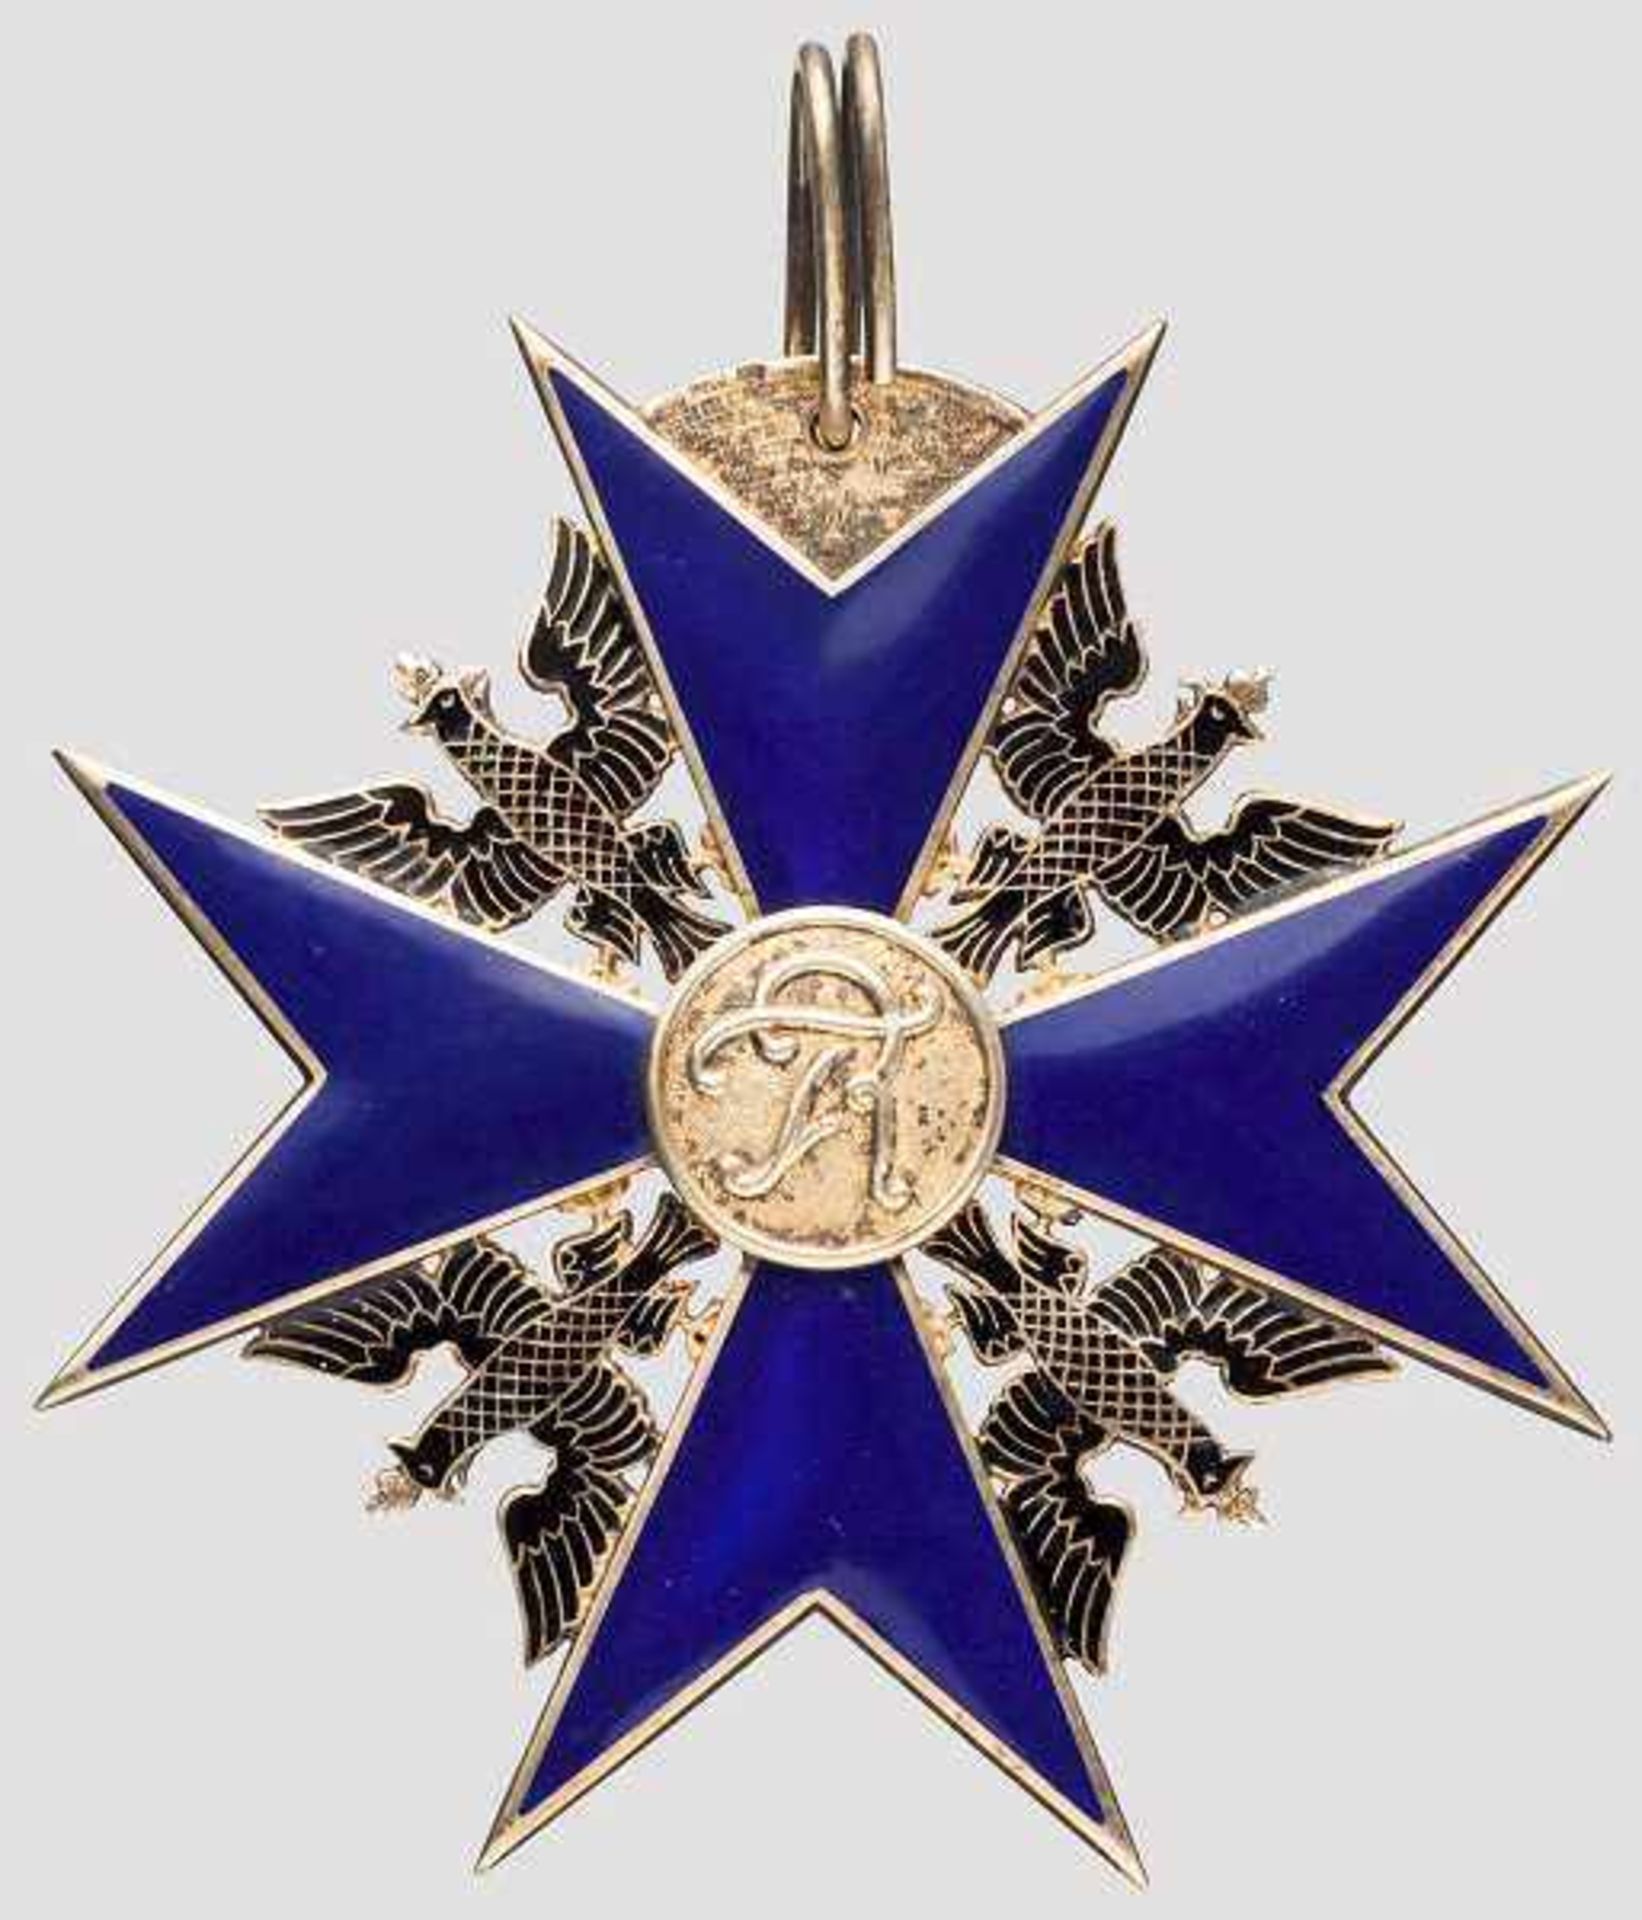 Schwarzer Adler Orden - Kreuz als Rothe-Kopie Qualitätvolle Sammleranfertigung der Wiener